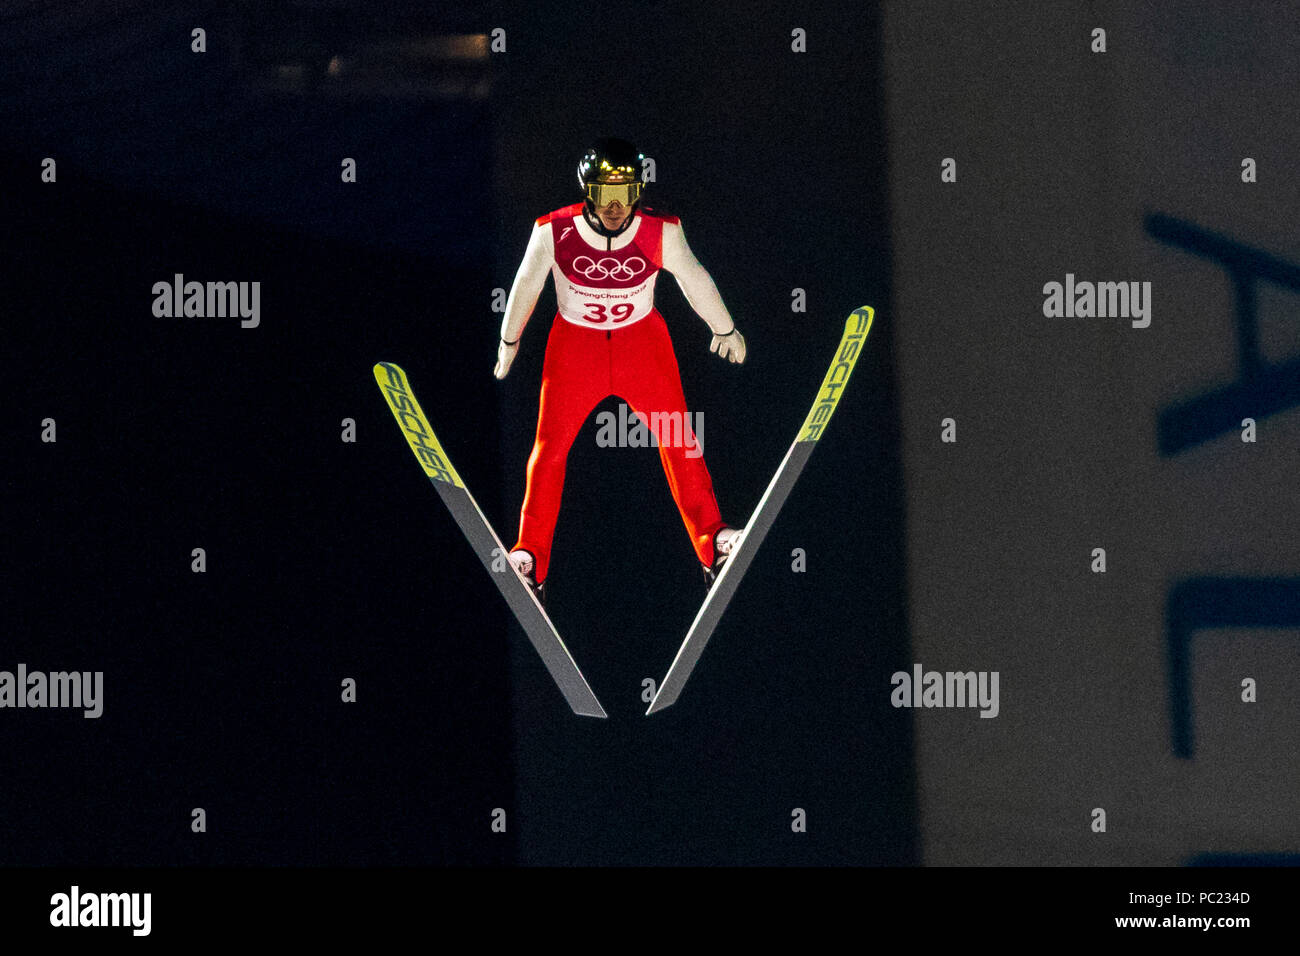 Michael Hayboeck (AUT) konkurrieren im Skispringen Herren Normalschanze Qualifikation bei den Olympischen Winterspielen PyeongChang 2018 Stockfoto